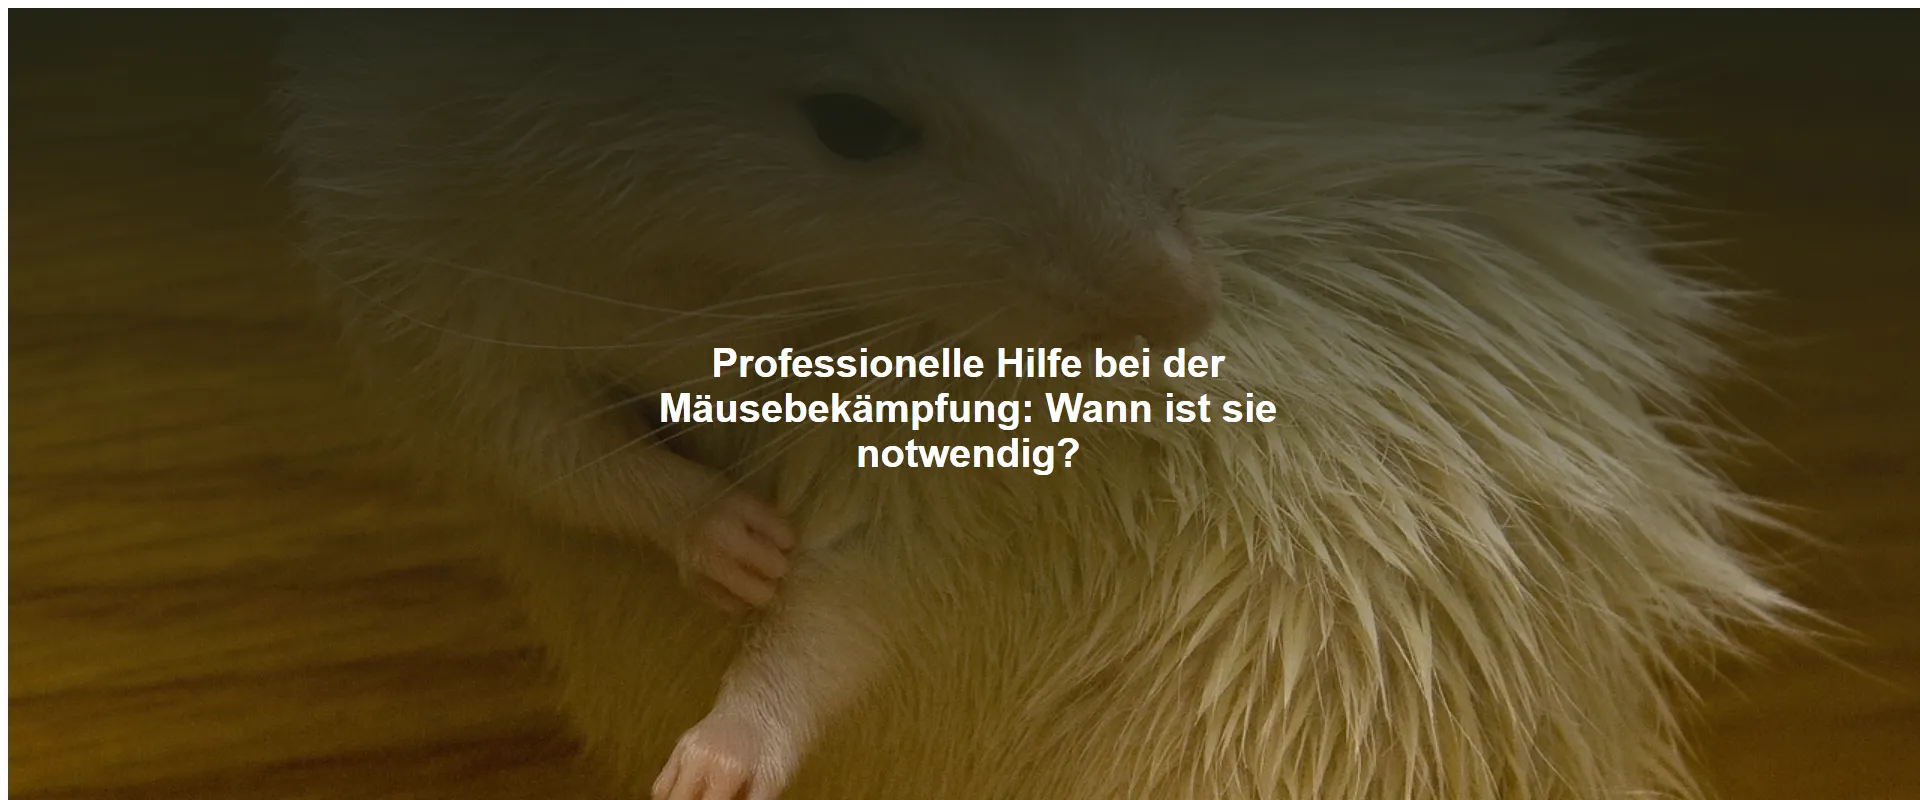 Professionelle Hilfe bei der Mäusebekämpfung: Wann ist sie notwendig?